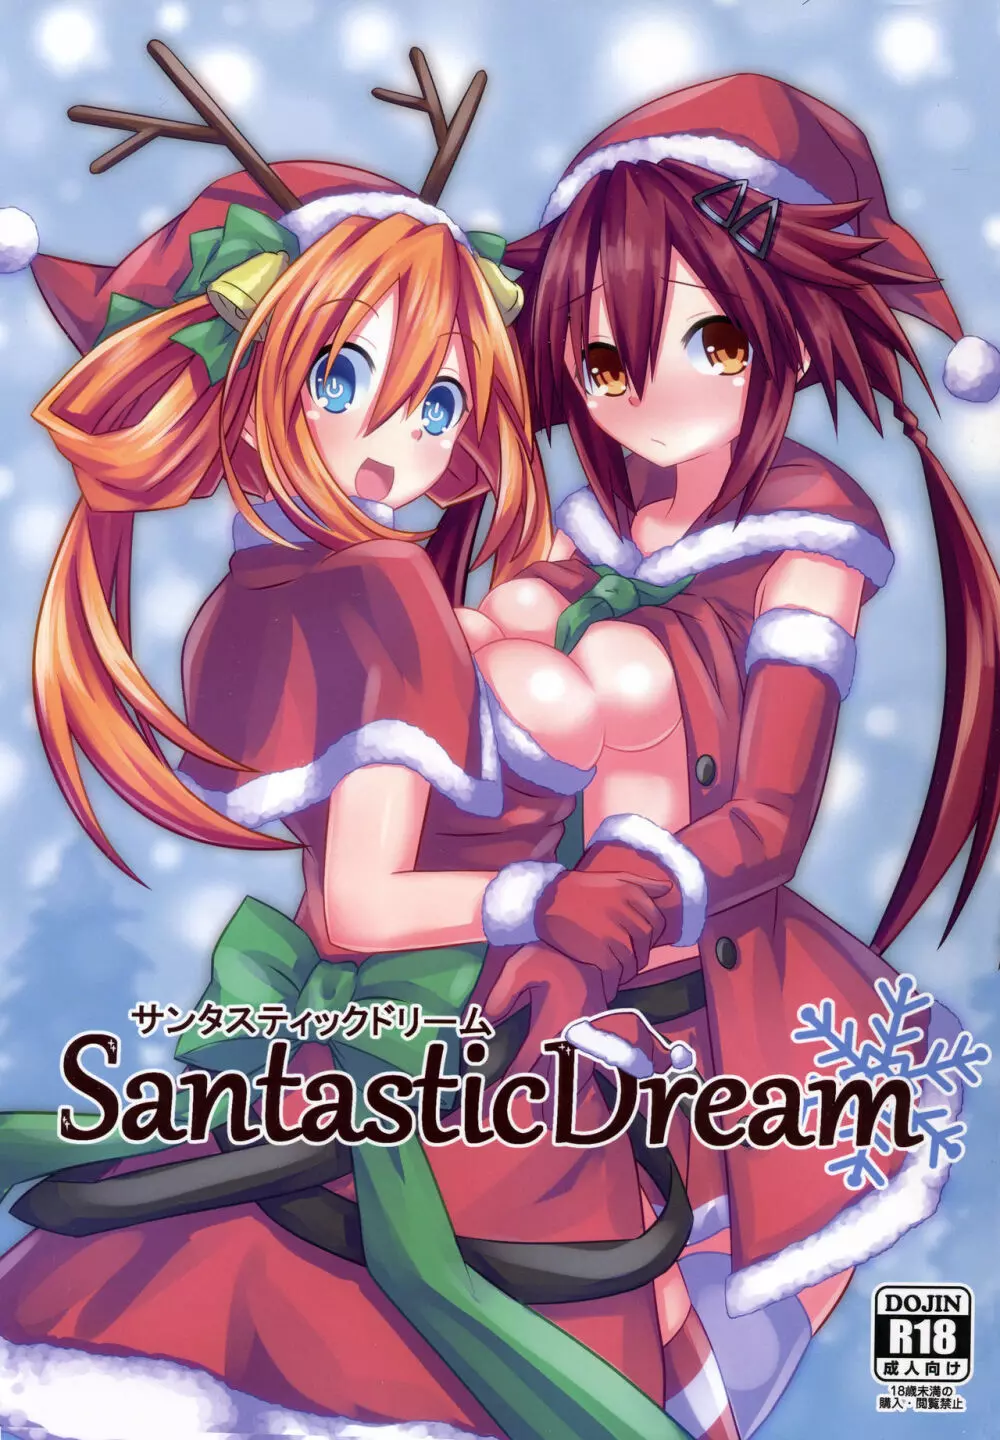 Santastic Dream